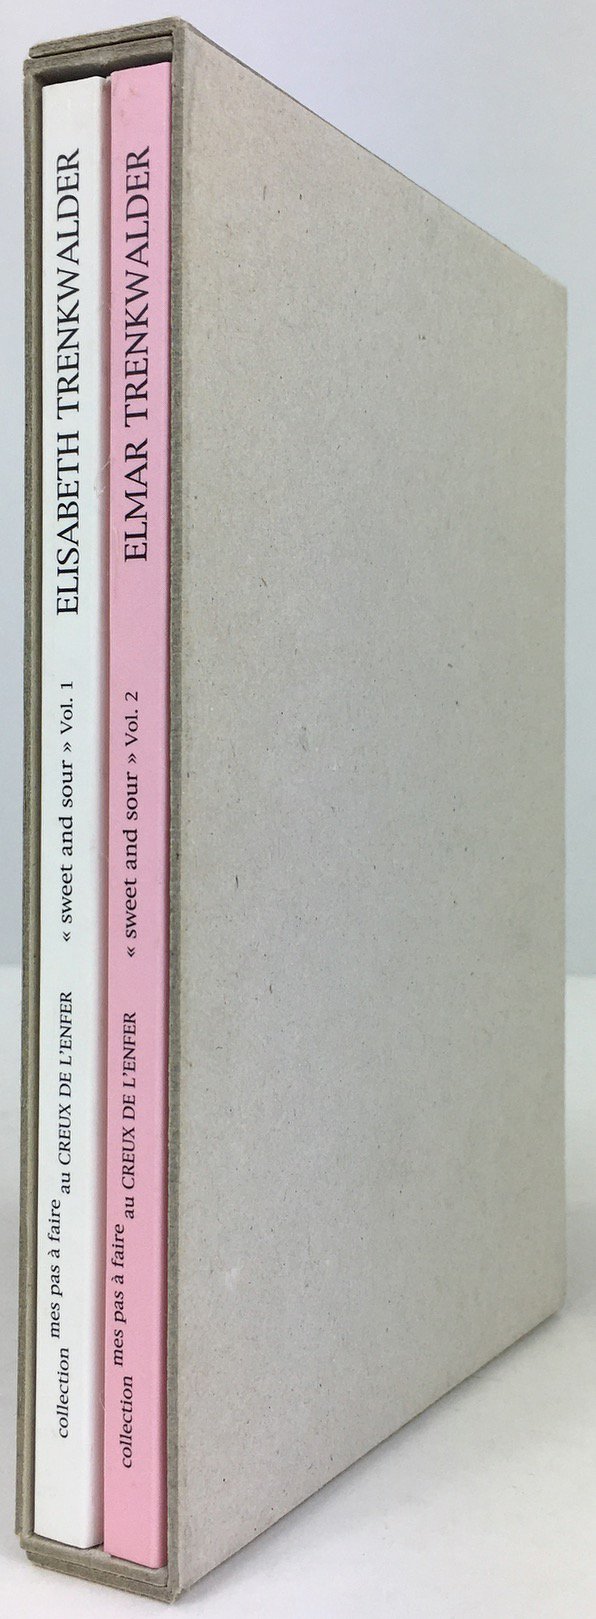 Abbildung von "<< sweet and sour >> Volume 1 : Elisabeth Trenkwalder / Volume 2 : Elmar Trenkwalder."